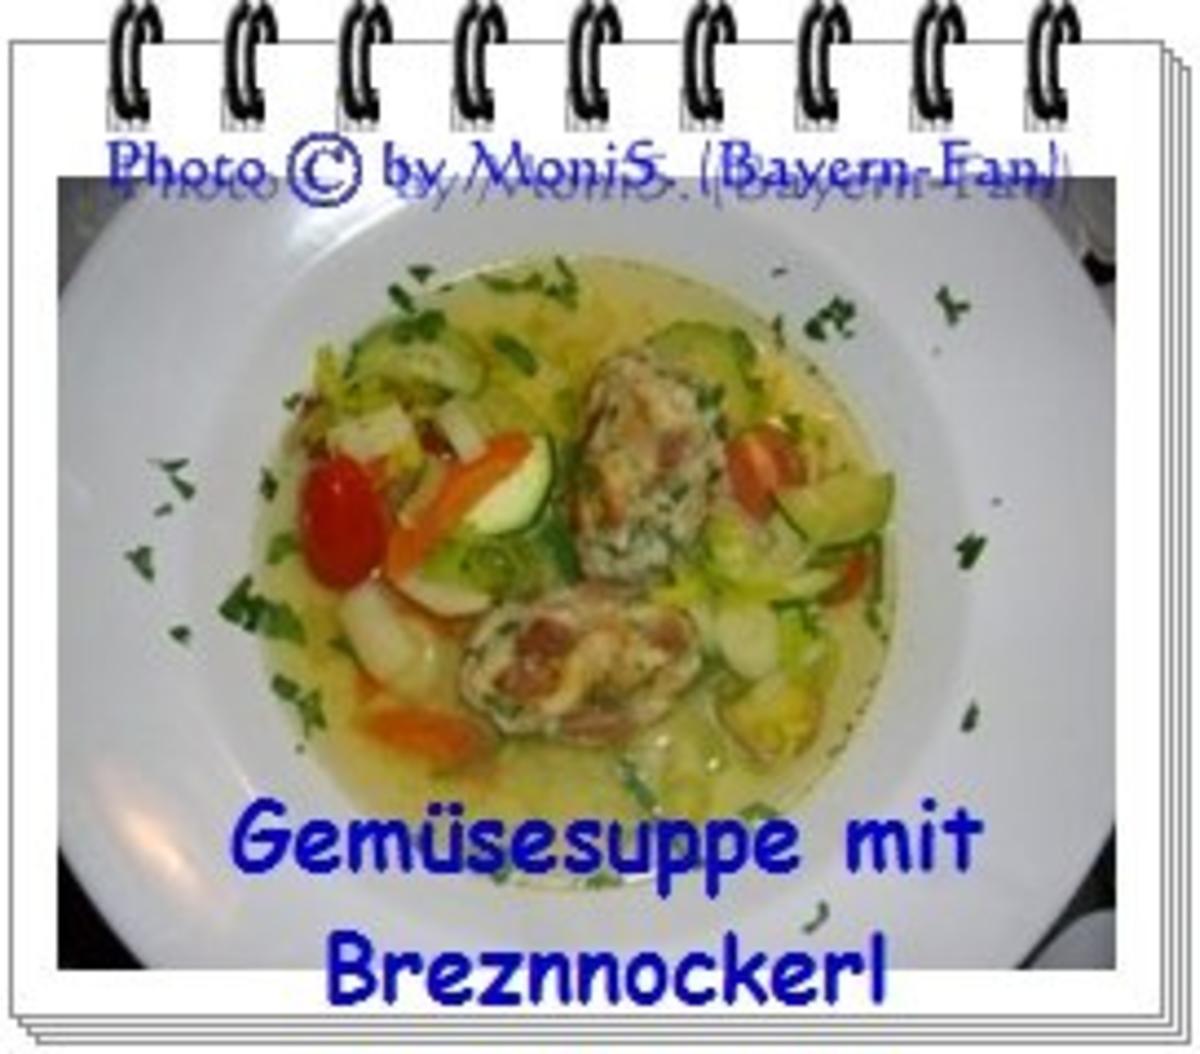 Gemüsesuppe mit Brezen-Nocken - Rezept